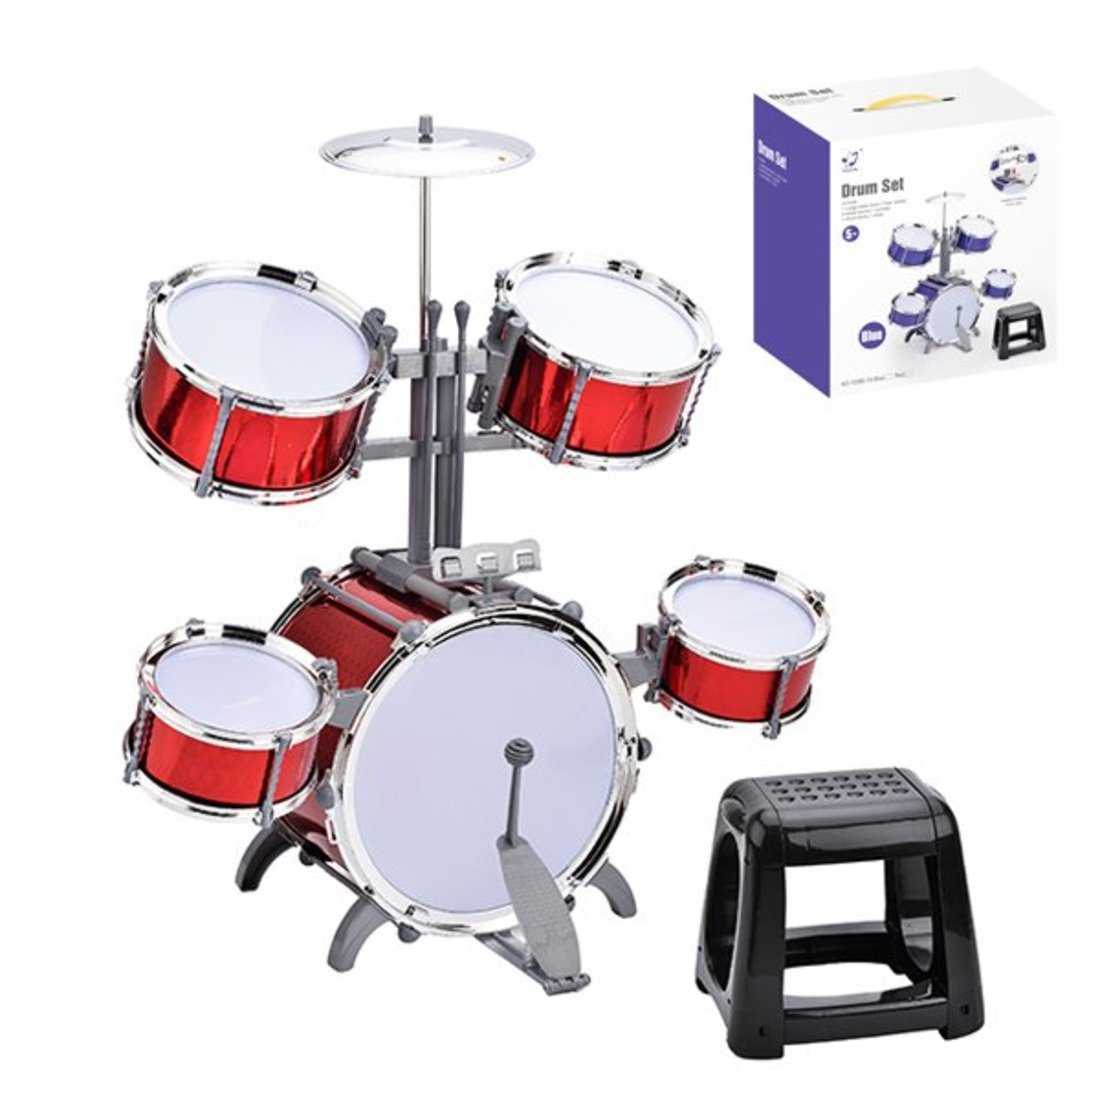 Музыкальная игрушка барабанная установка, 5 барабанов, тарелка, стульчик, в ассорт., кор.